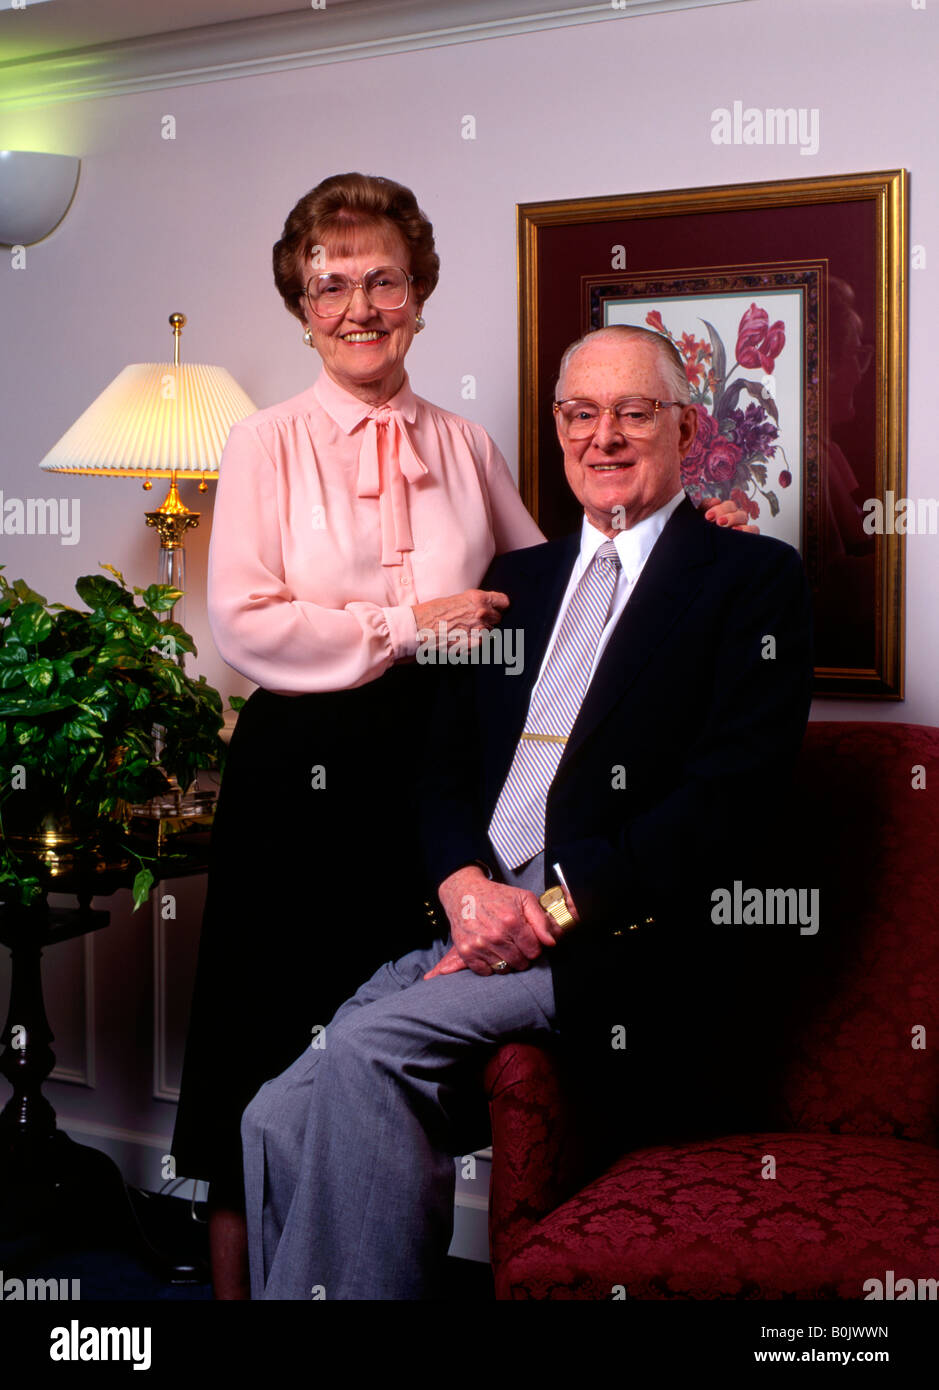 Smiling Senior citizen formelle couple portrait Banque D'Images